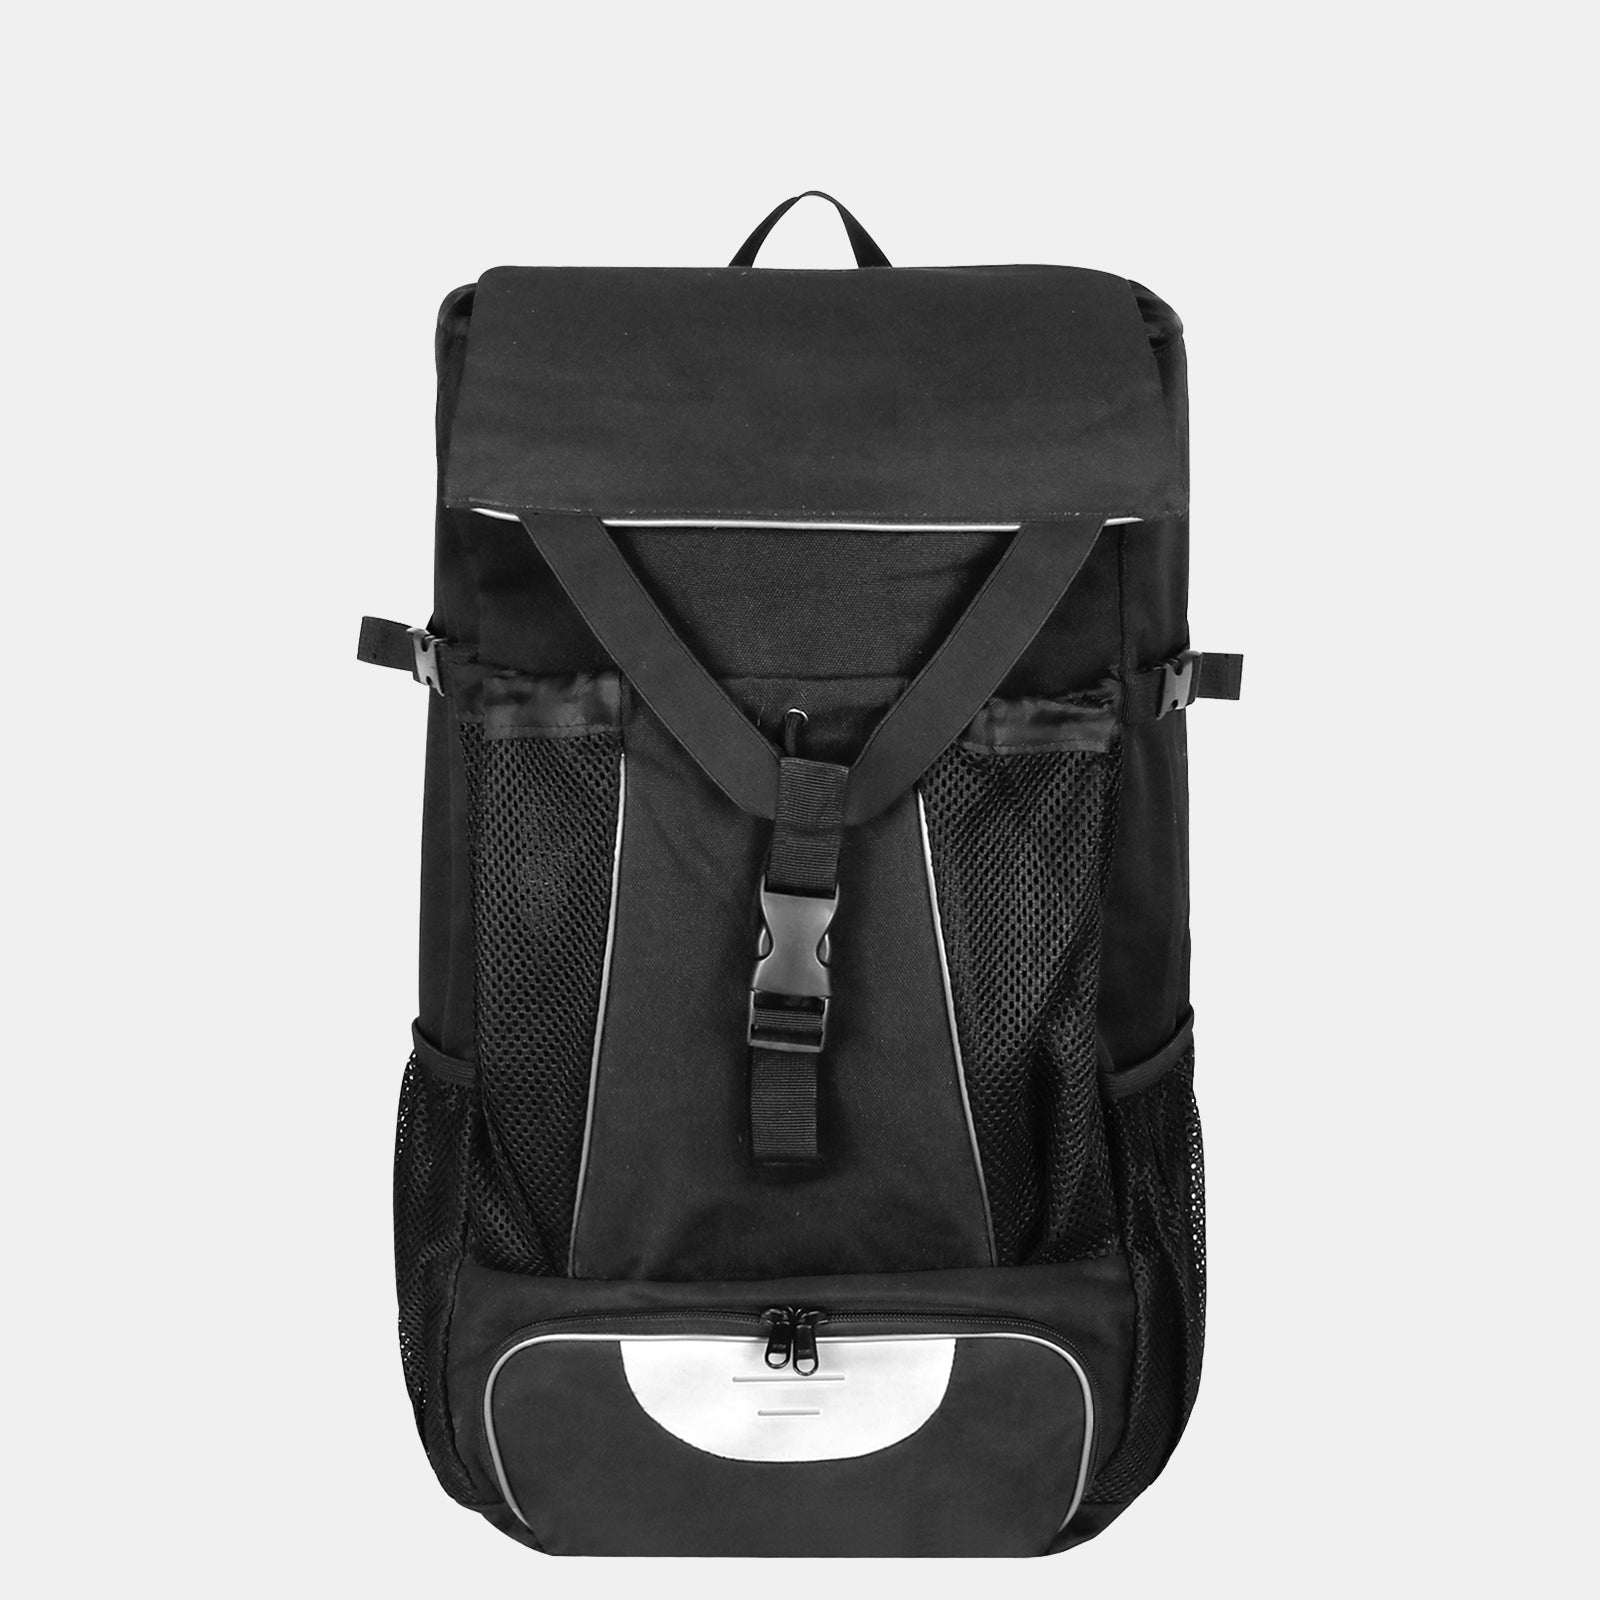 Estarer Sports Travel Backpack 15.6 Inch